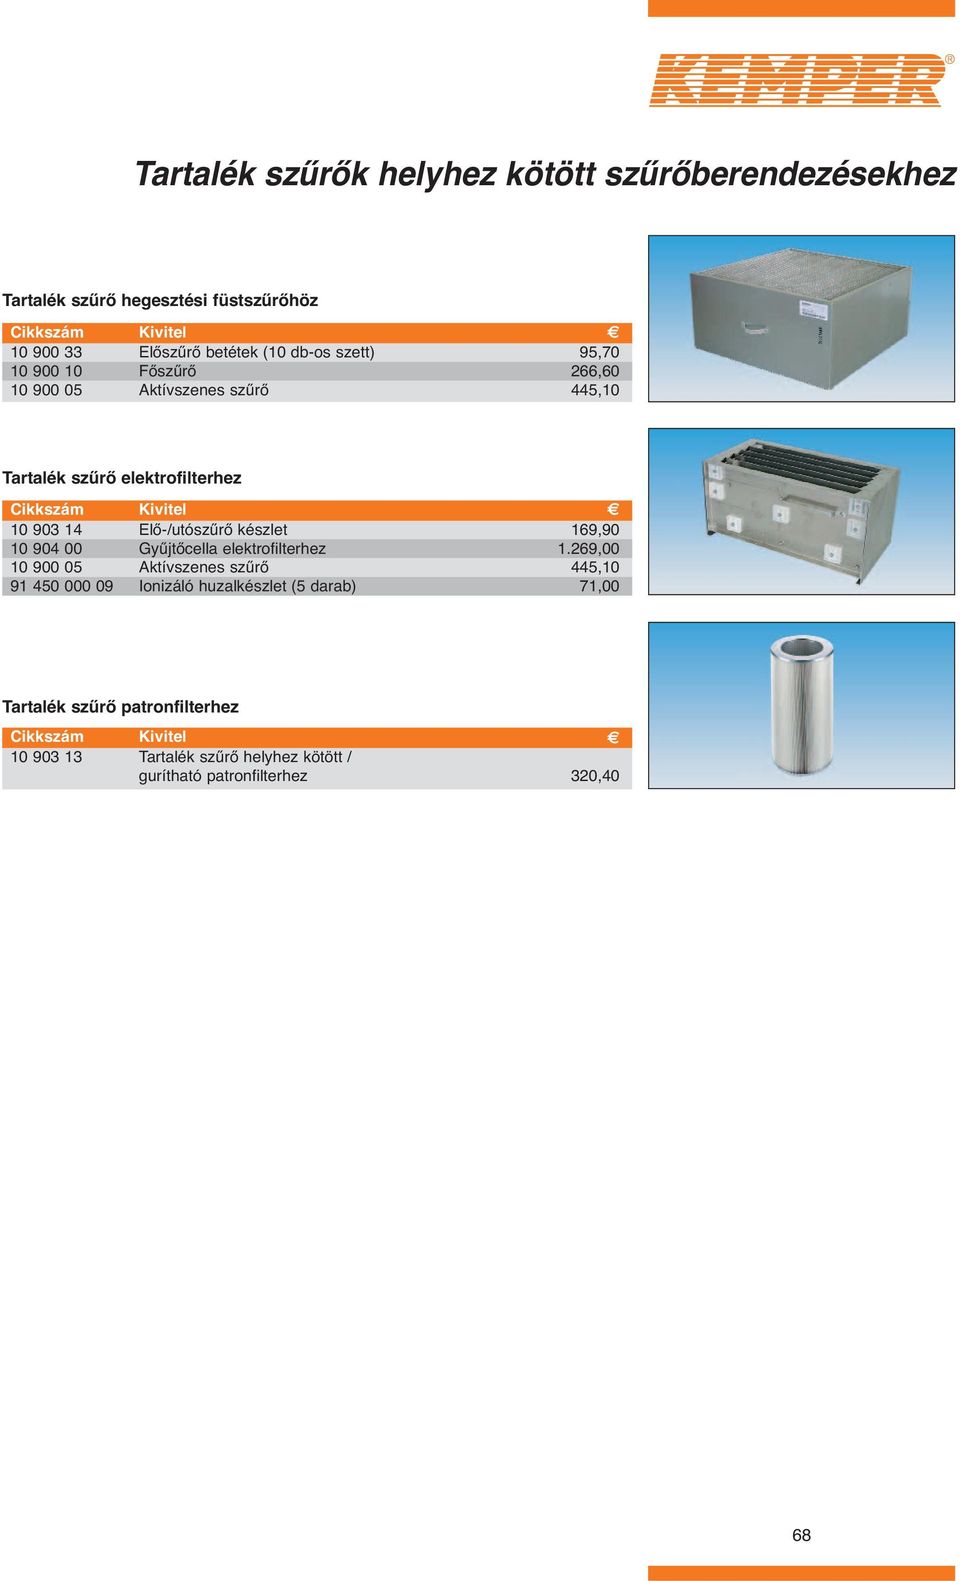 00 10 900 05 91 450 000 09 Elő-/utószűrő készlet Gyűjtőcella elektrofilterhez Aktívszenes szűrő Ionizáló huzalkészlet (5 darab)